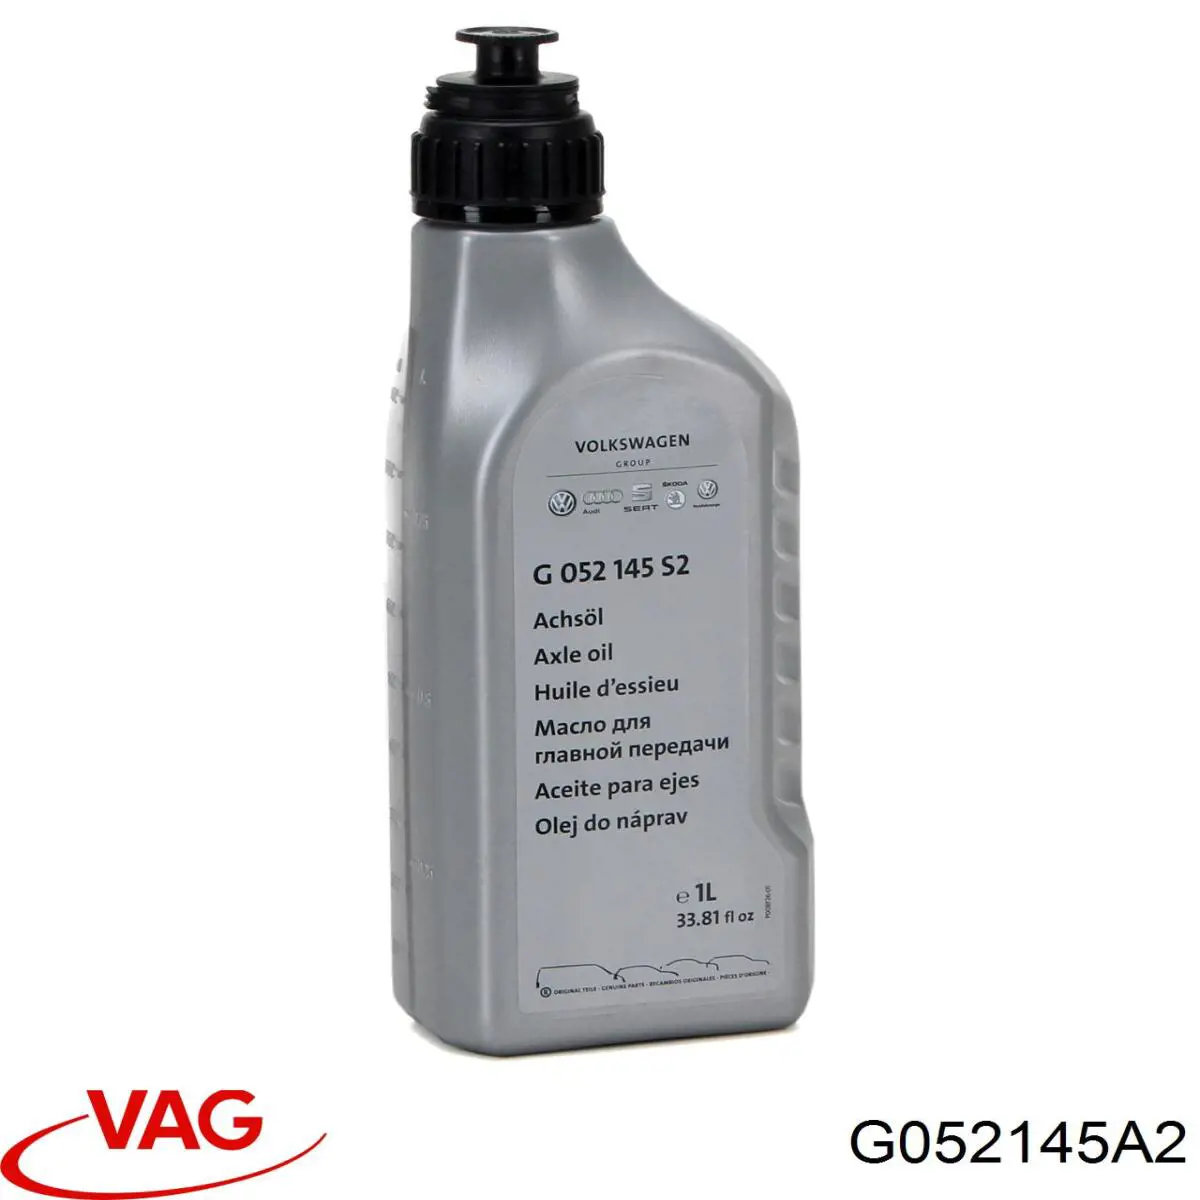  Трансмиссионное масло VAG (G052145A2)